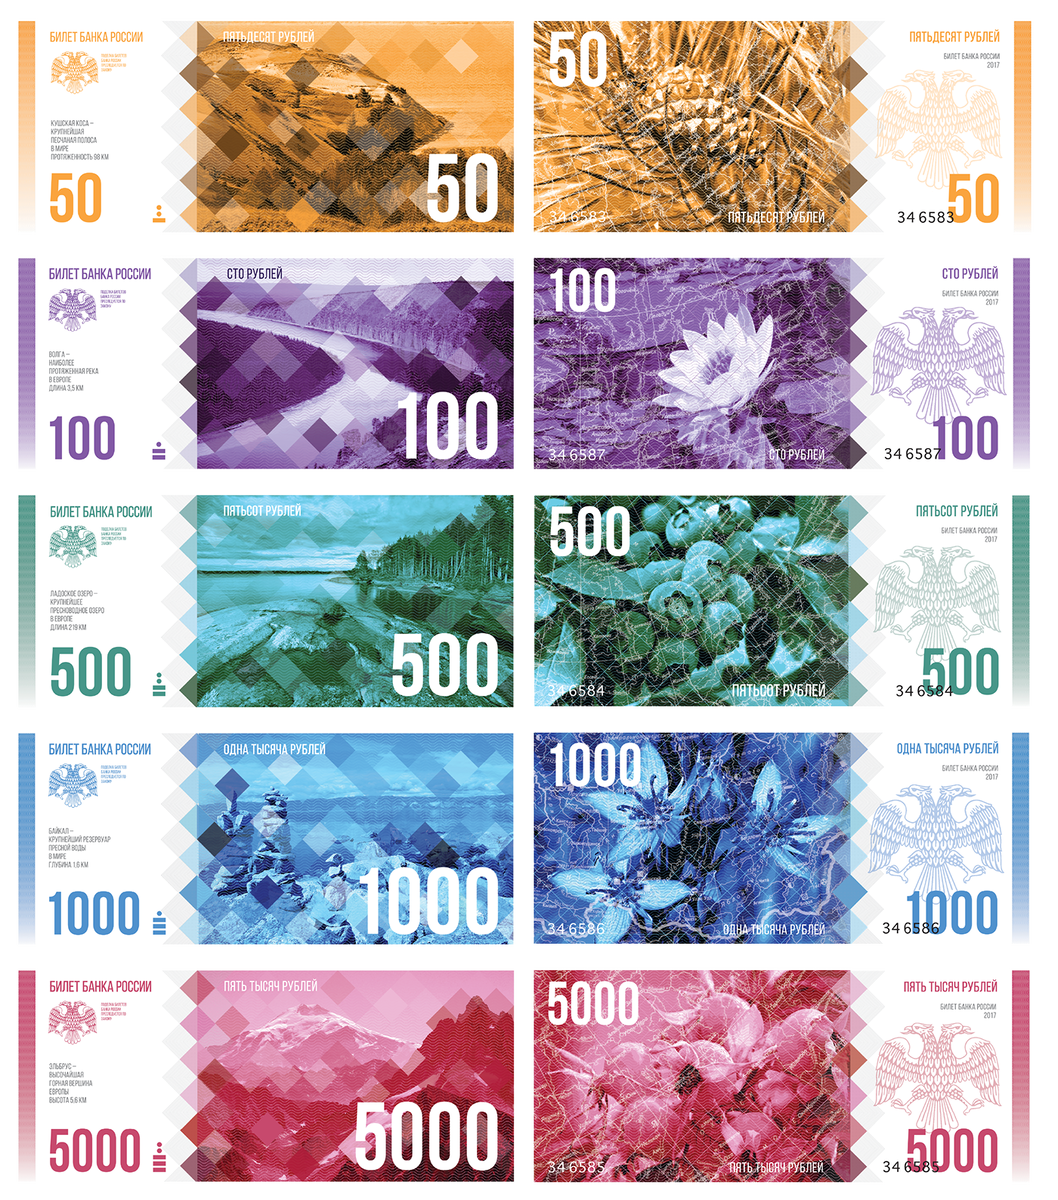 Образец новых купюр рубля. Редизайн банкнот. Новый дизайн банкнот. Дизайн бумажных денег. Новые бумажные деньги.